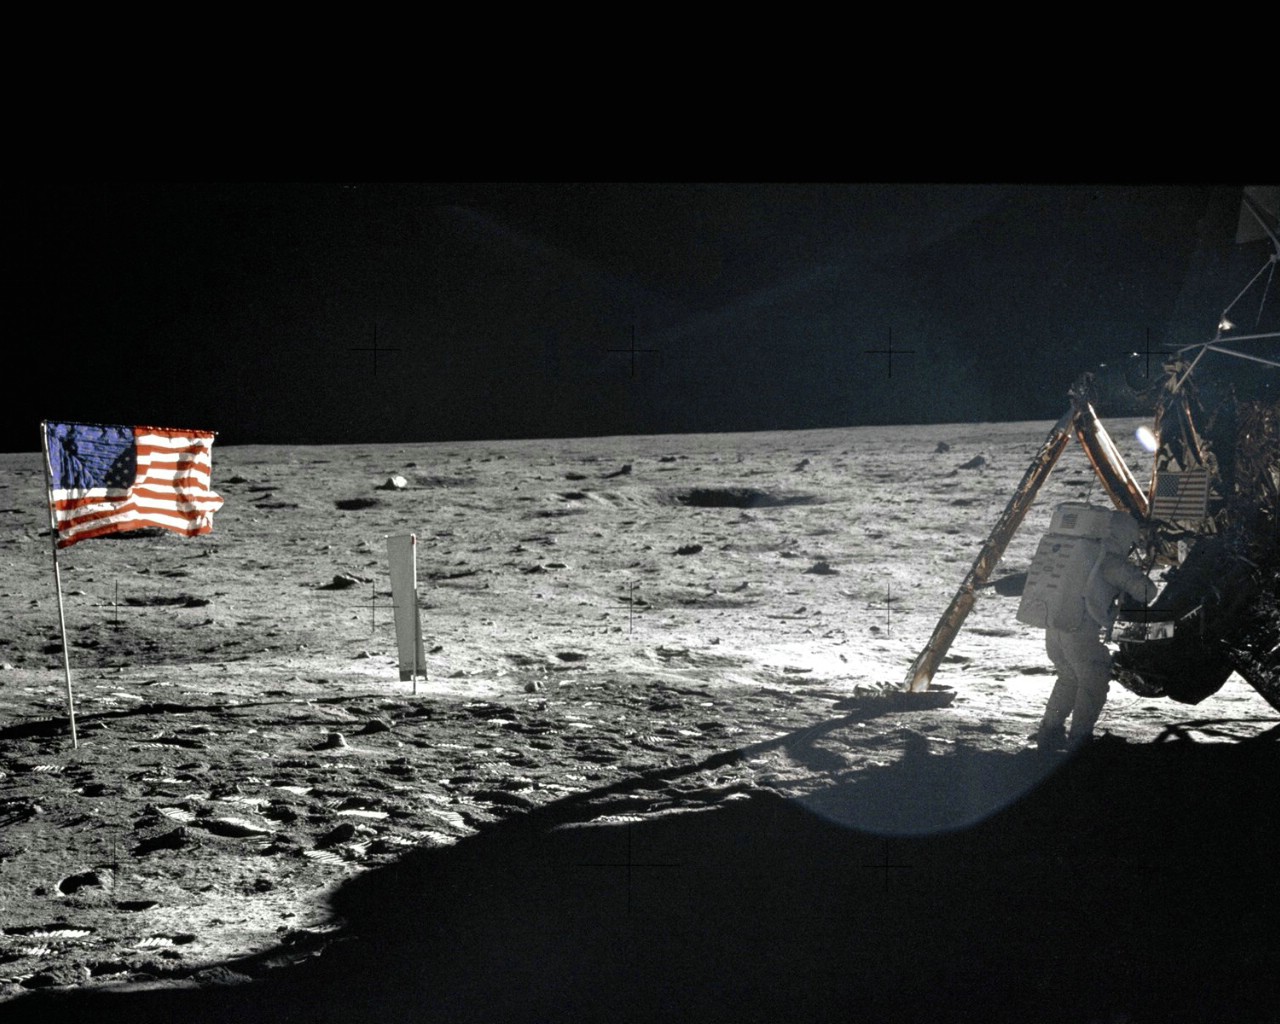 壁纸1280x1024One Giant Leap for Mankind  Neil Armstrong On The Moon 登月舱旁的阿姆斯壮壁纸 阿波罗11号登月40周年纪念壁纸壁纸 阿波罗11号登月40周年纪念壁纸图片 阿波罗11号登月40周年纪念壁纸素材 人文壁纸 人文图库 人文图片素材桌面壁纸